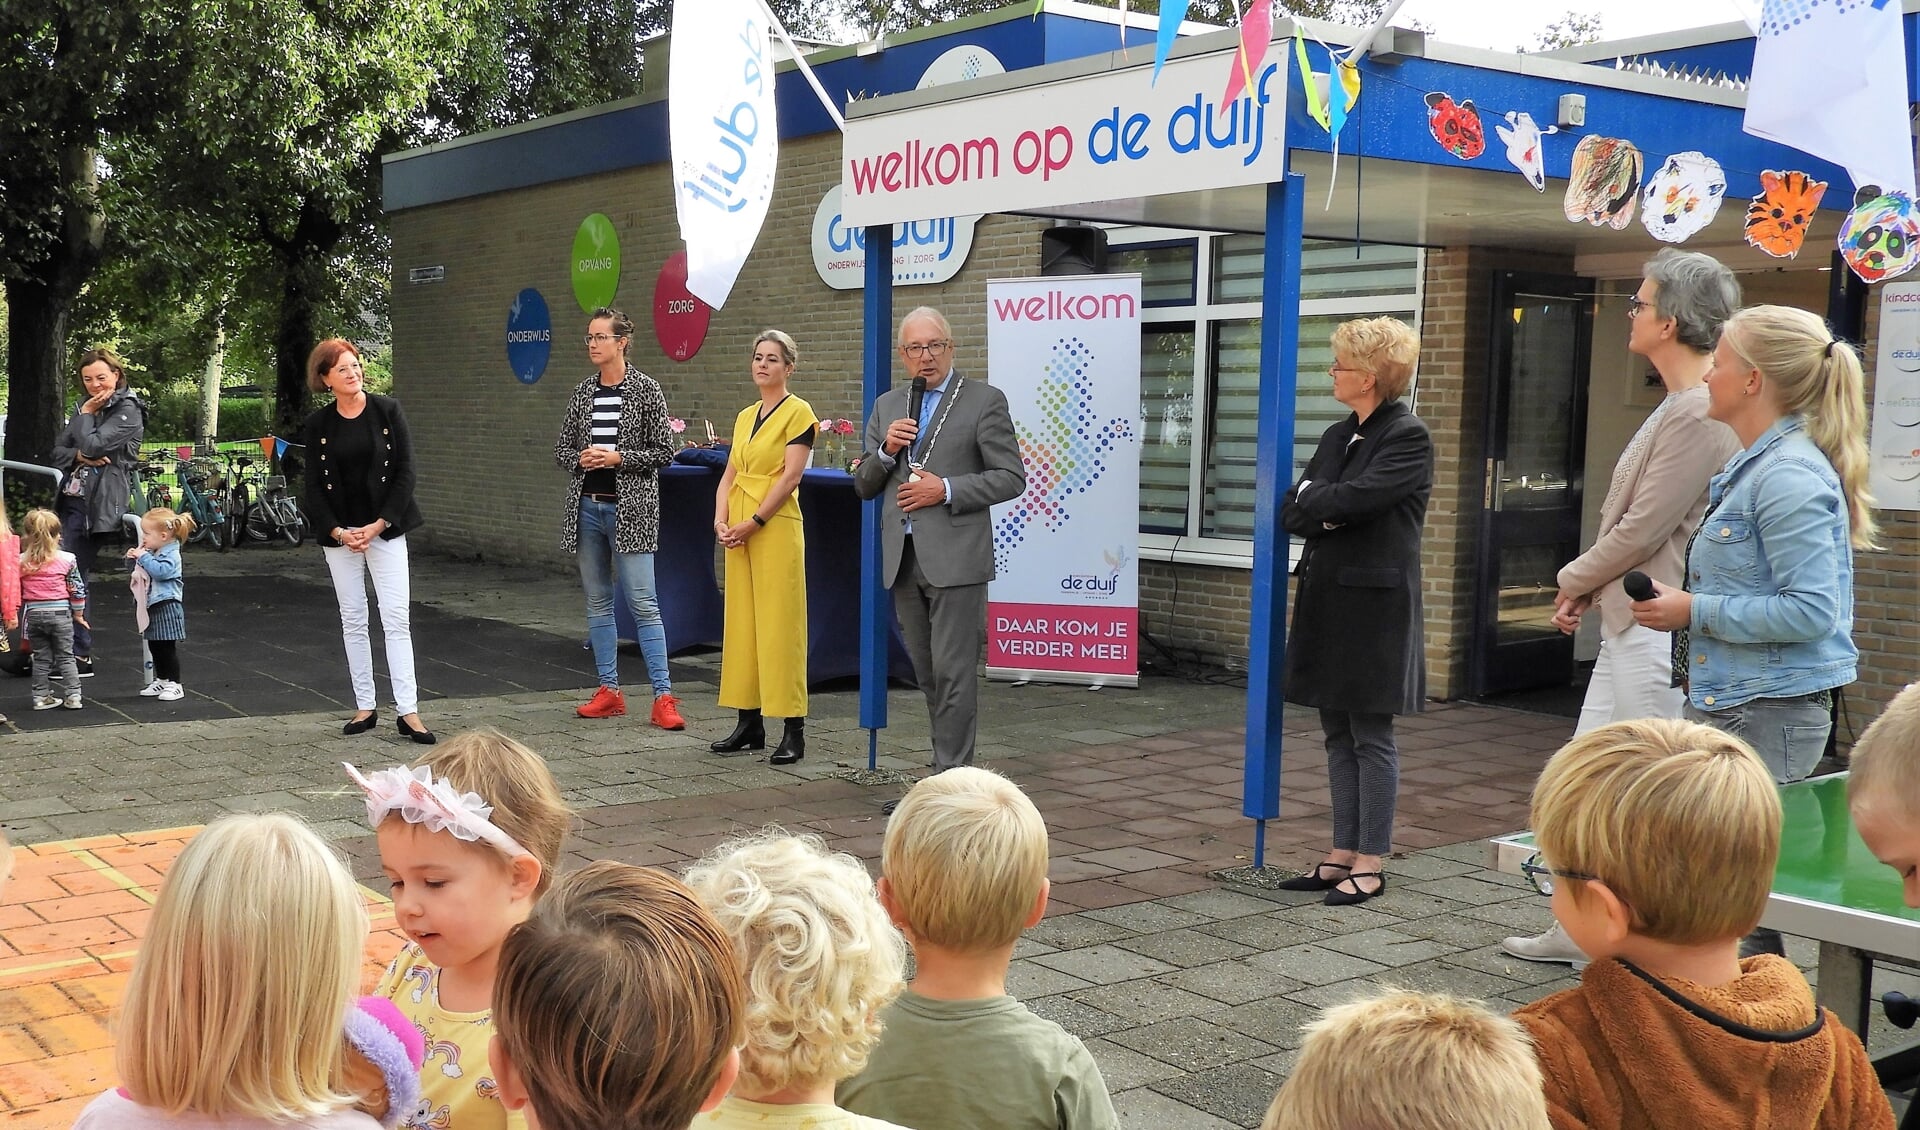 Burgemeester Romeyn opent kindcentrum De Duif samen met kinderen, directie, bestuurders, partners  en medewerkers tijdens het muzikale startfeest.

